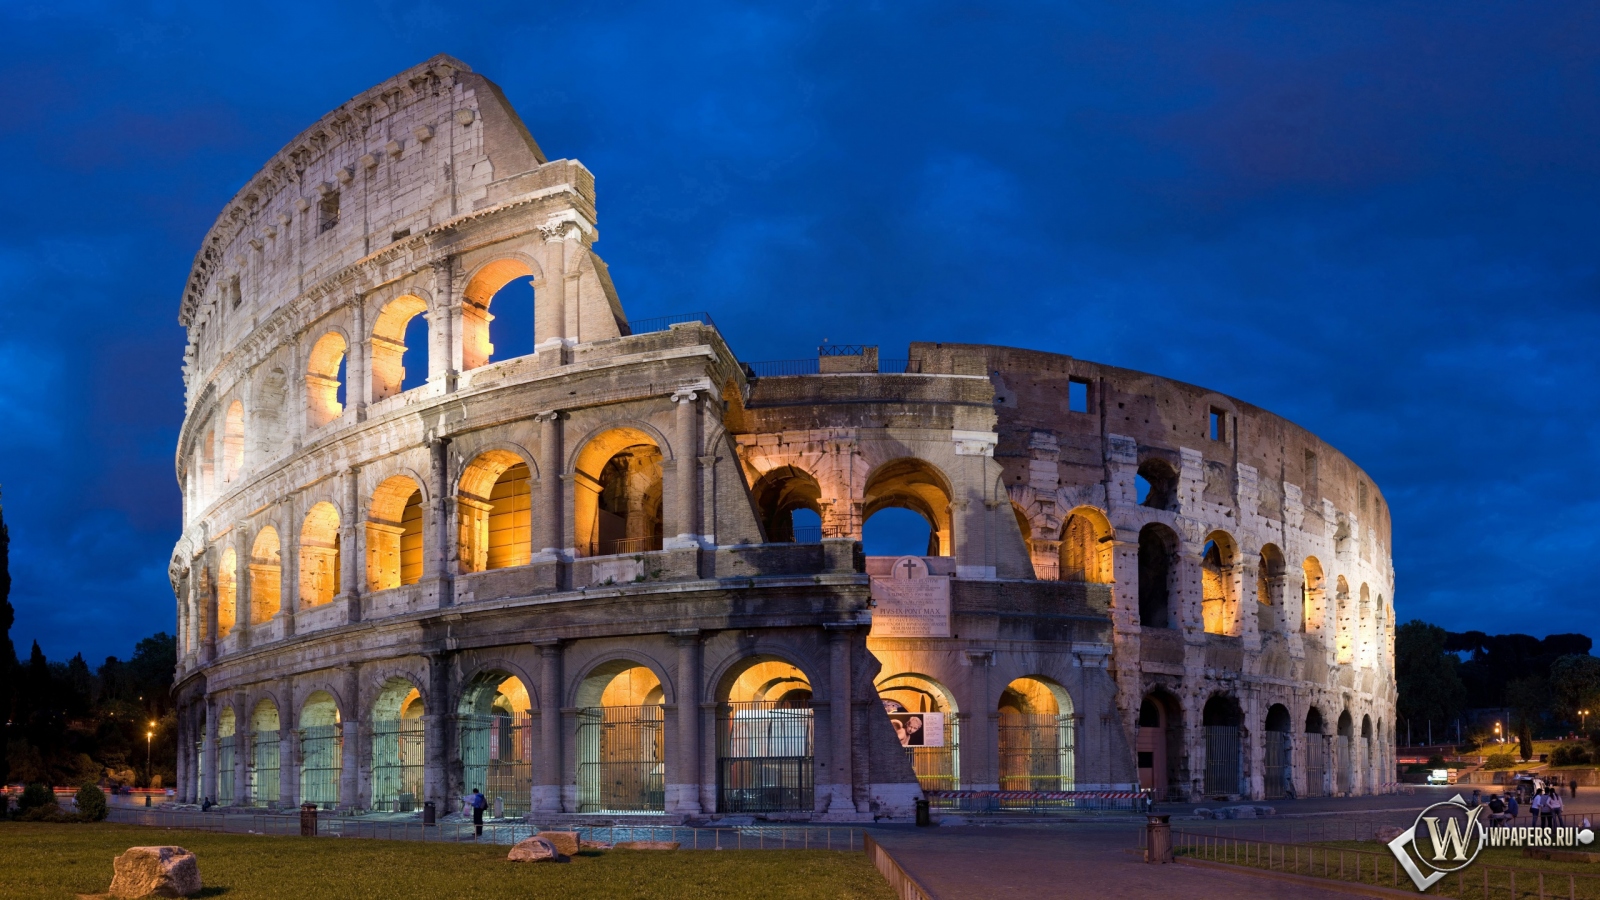 Colosseum in Rome 1600x900